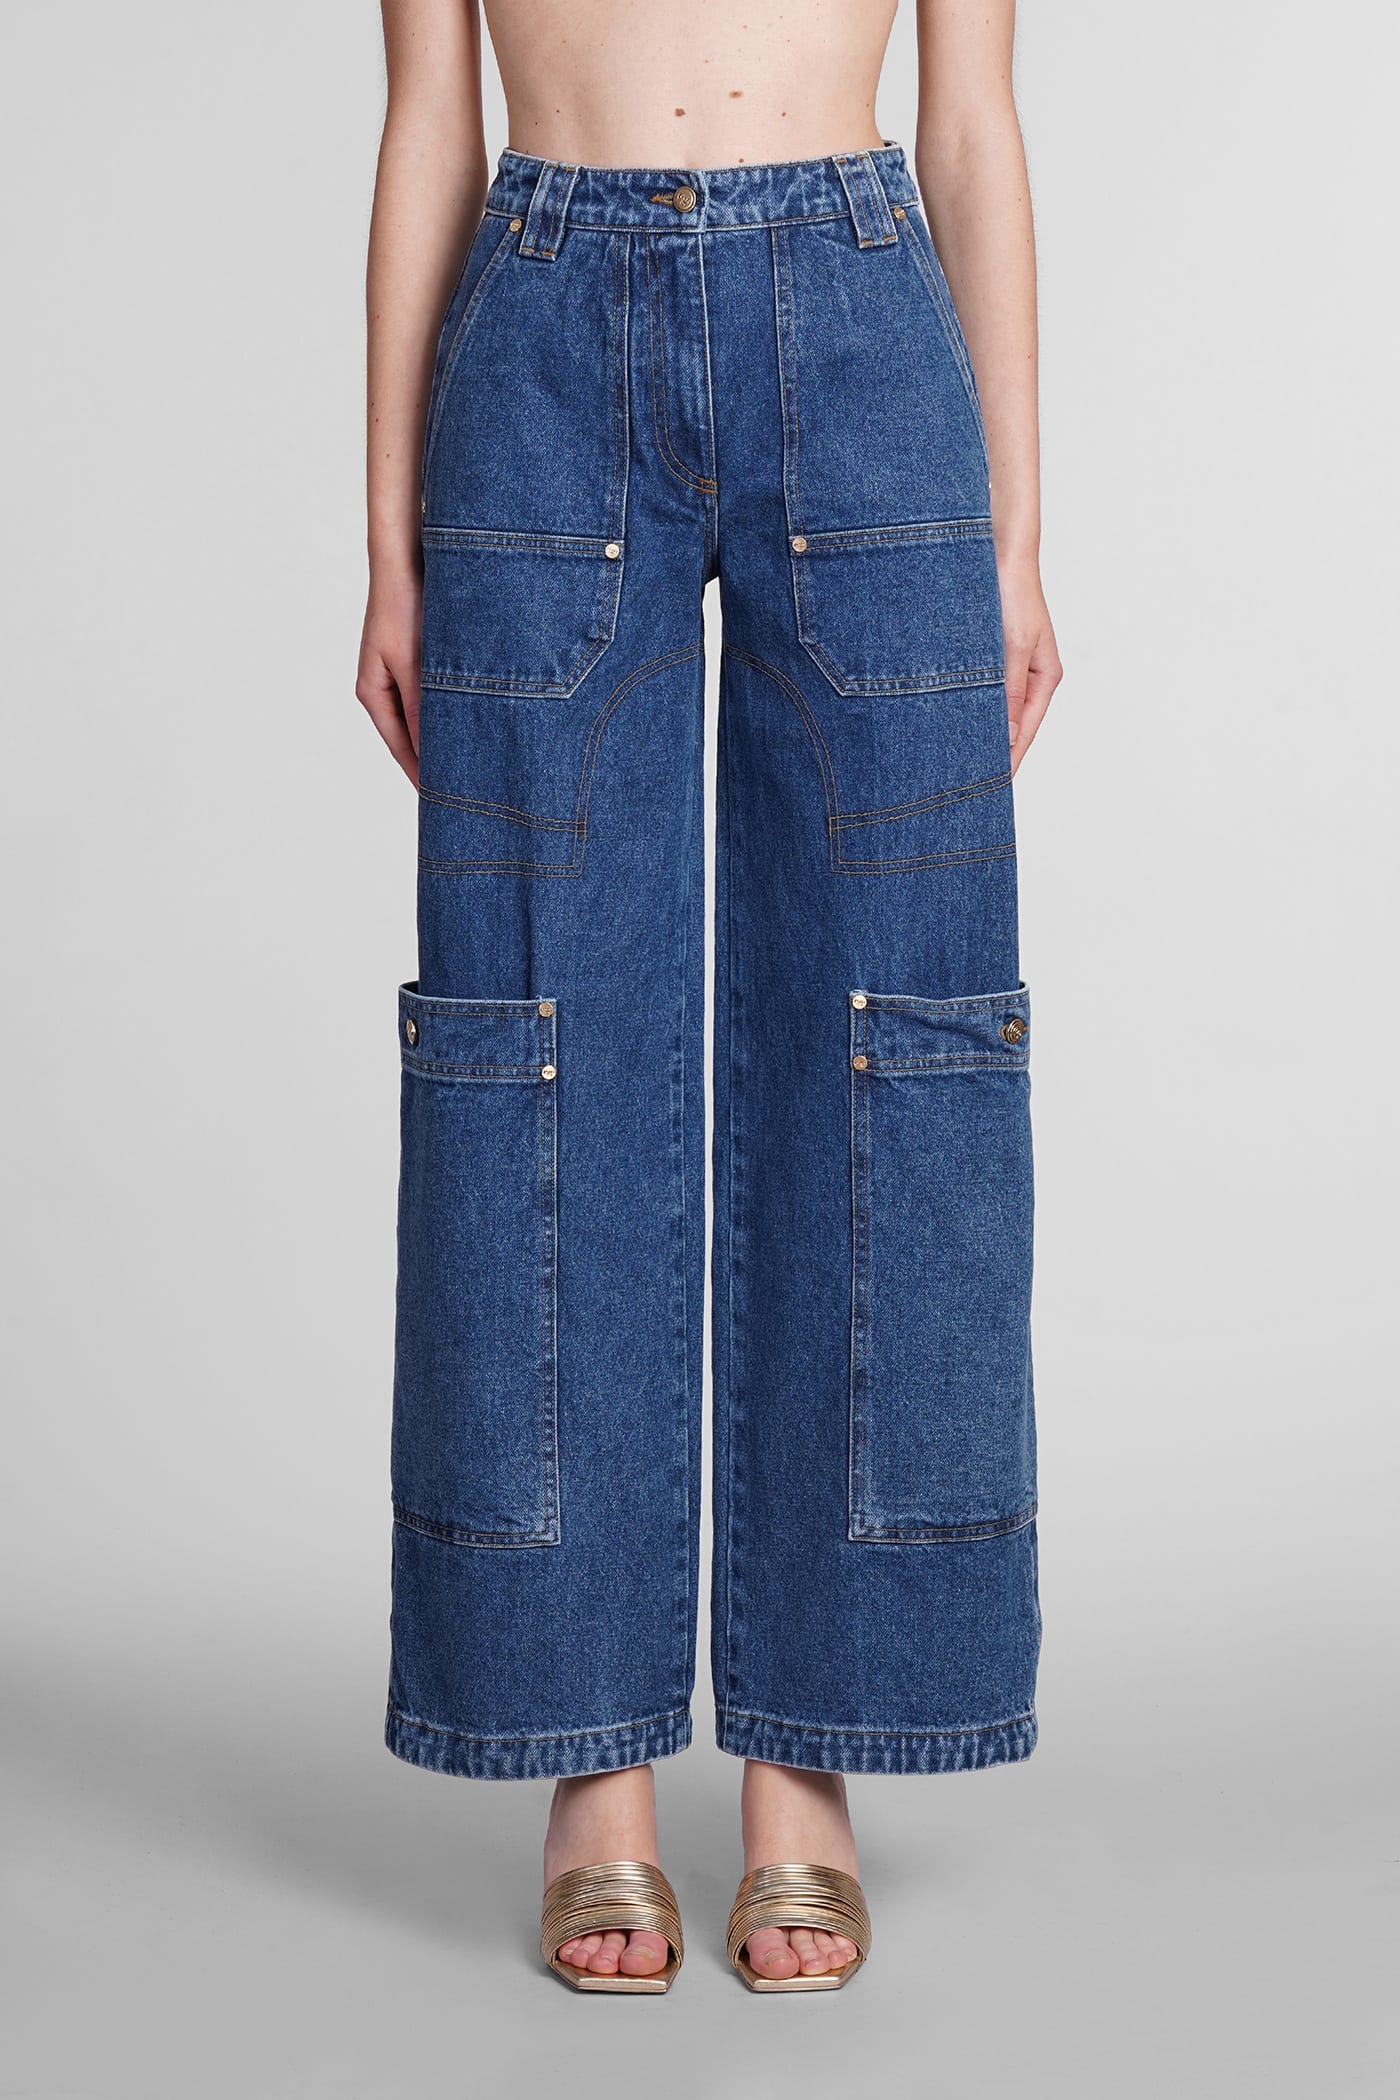 Cult Gaia Wynn Jeans In Blue Denim